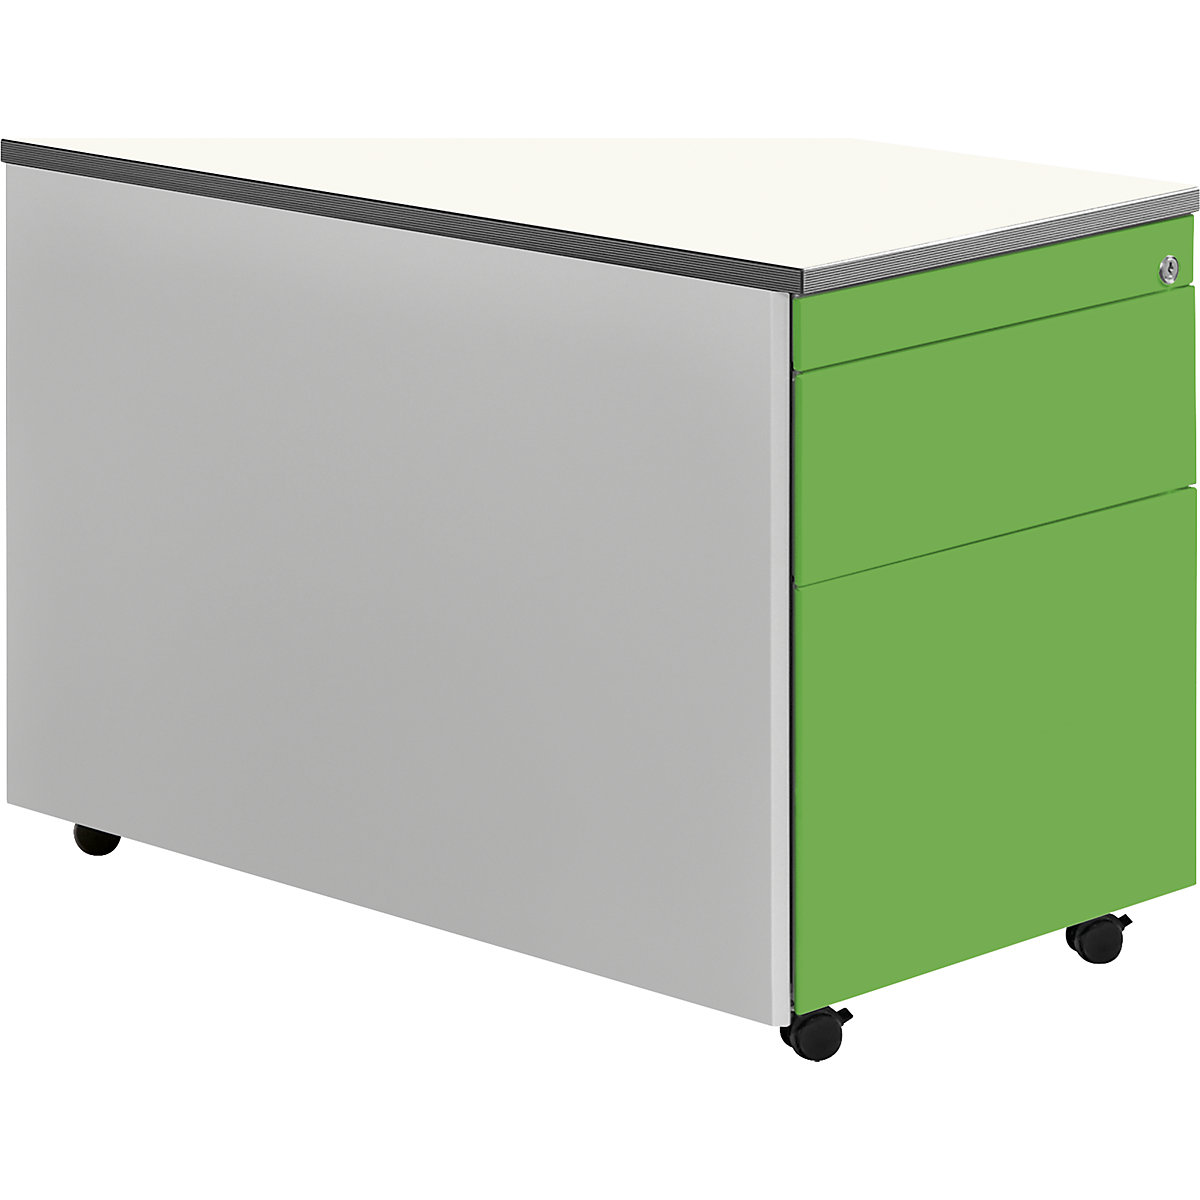 Casetieră cu sertare cu role – mauser, î. x lăț. 579 x 800 mm, blat din plastic, 1 sertar pentru materiale, 1 registratură suspendată, alb aluminiu / verde gălbui / alb